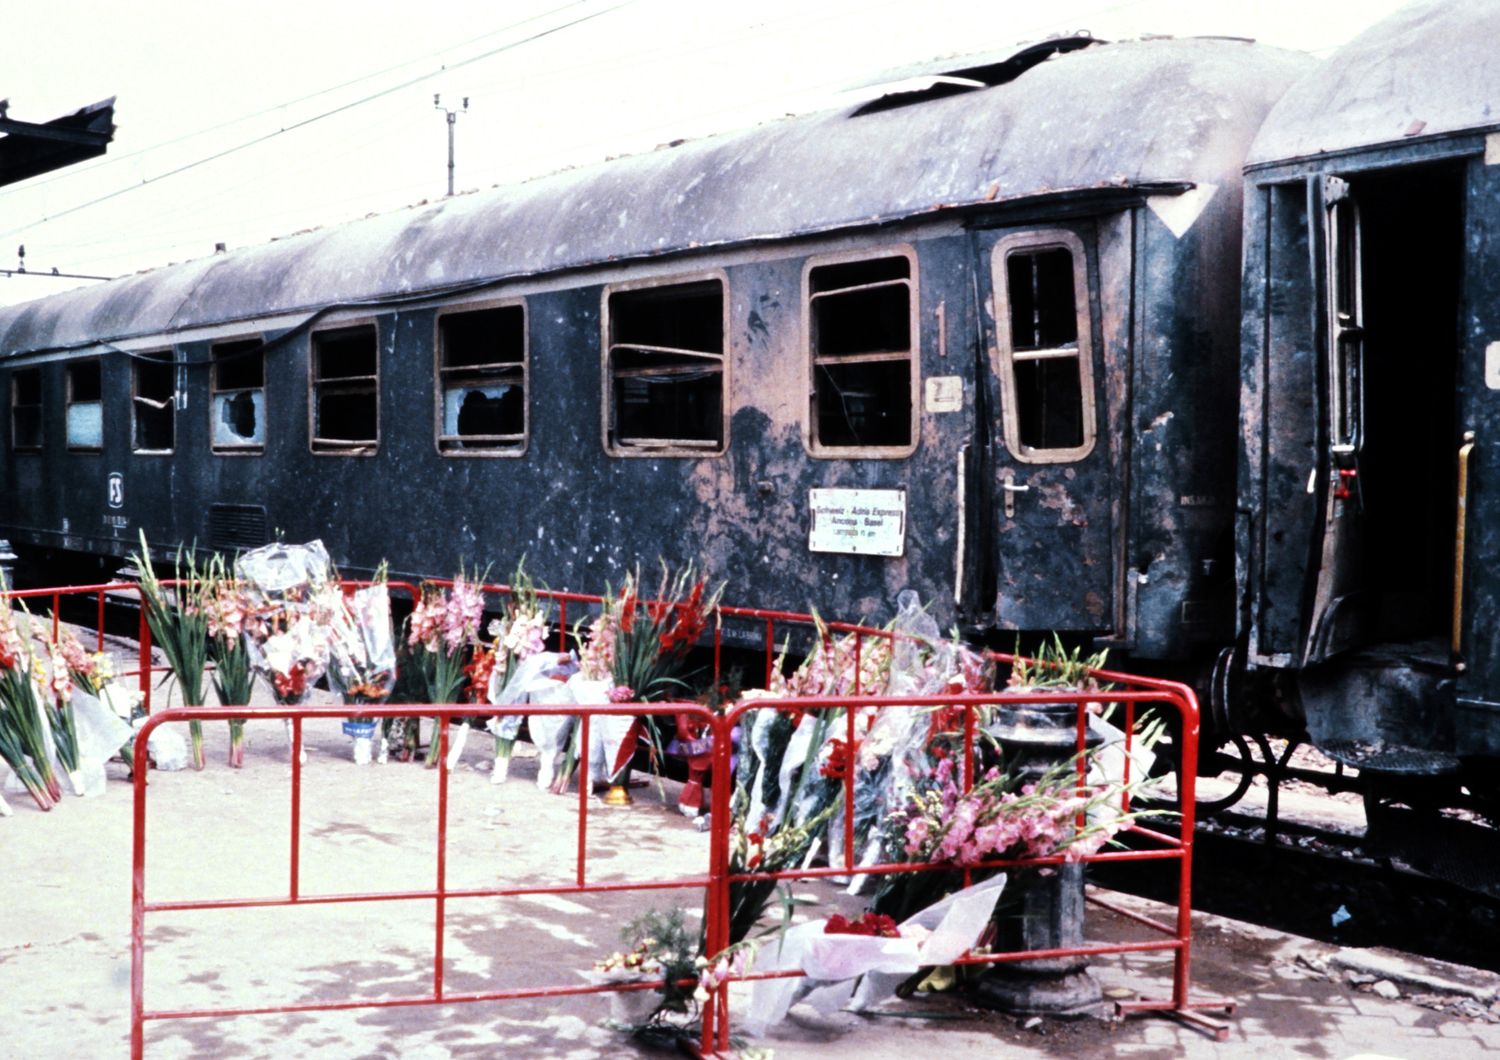 &nbsp;Strage stazione di Bologna 1980